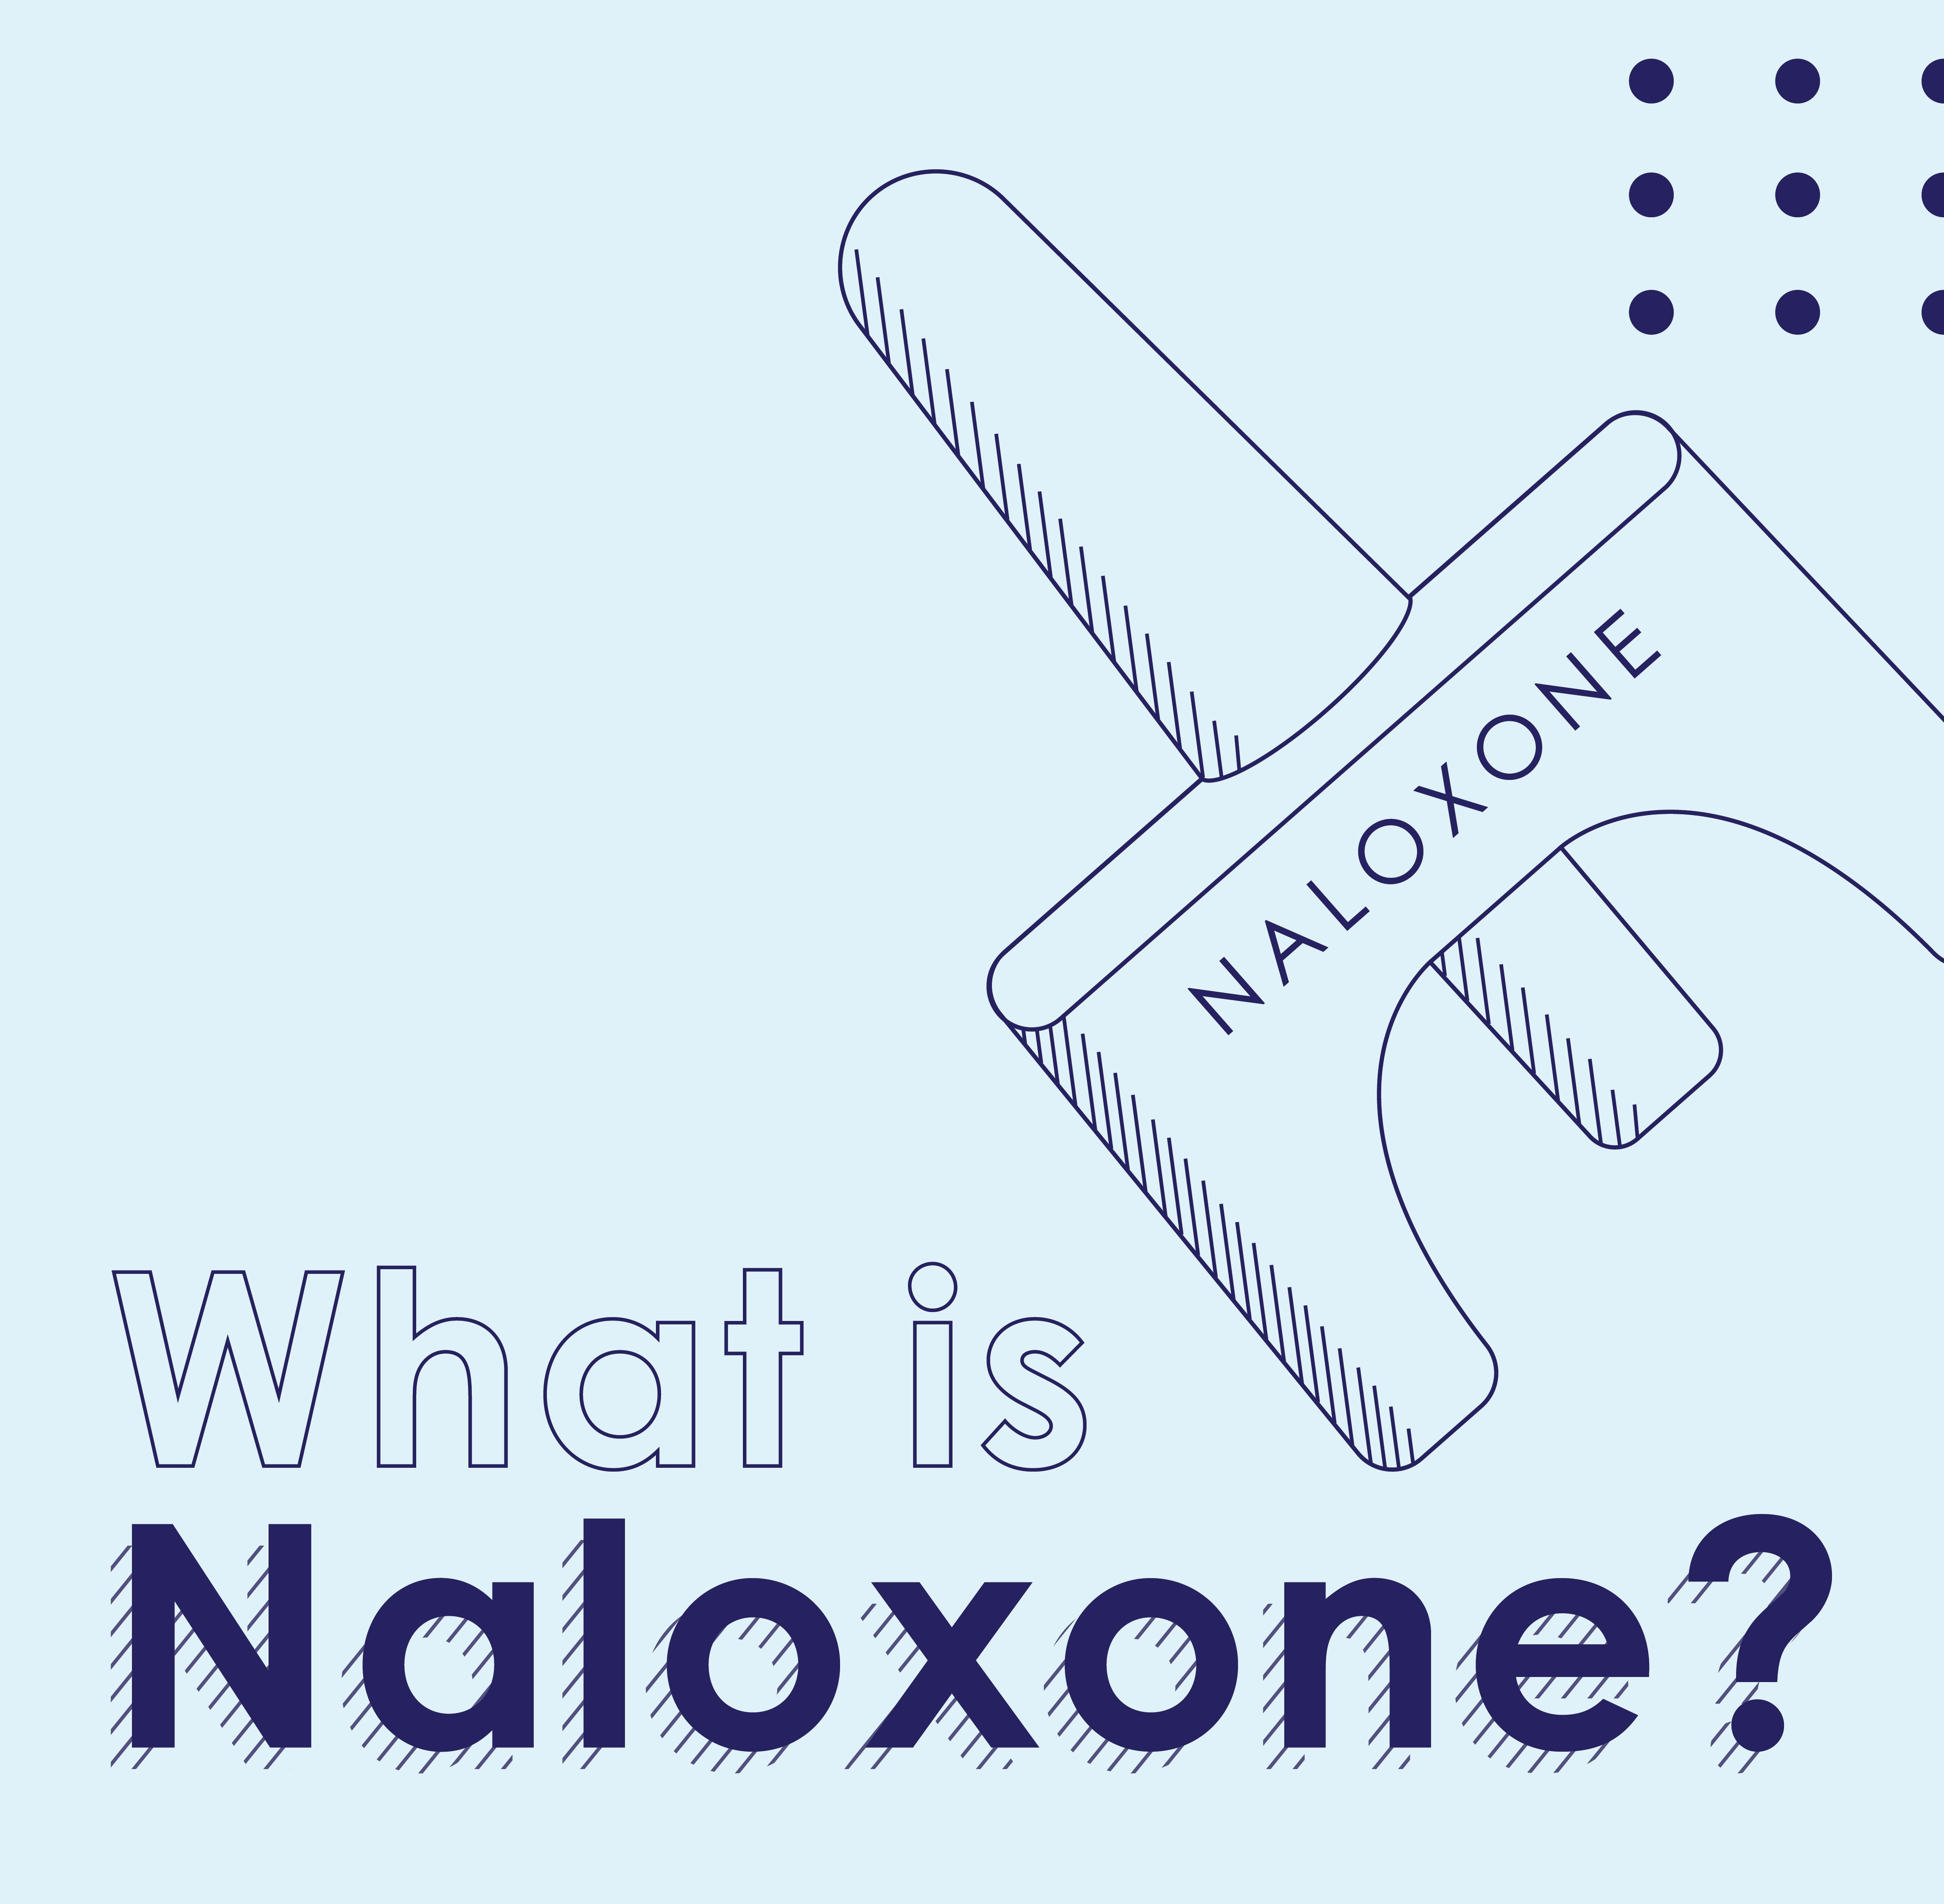 image of naloxone